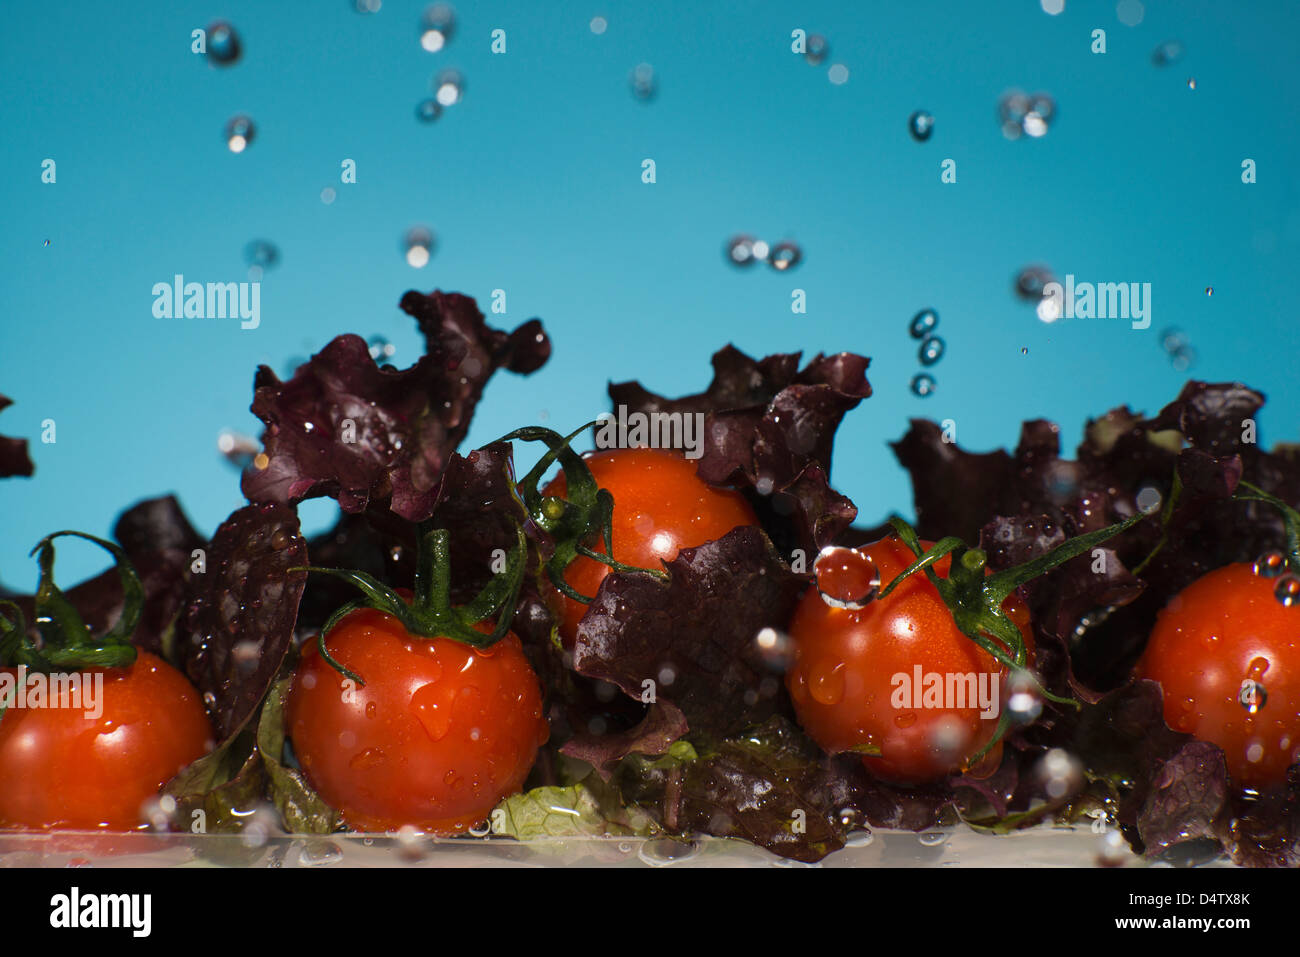 La laitue et les tomates splashing in water Banque D'Images